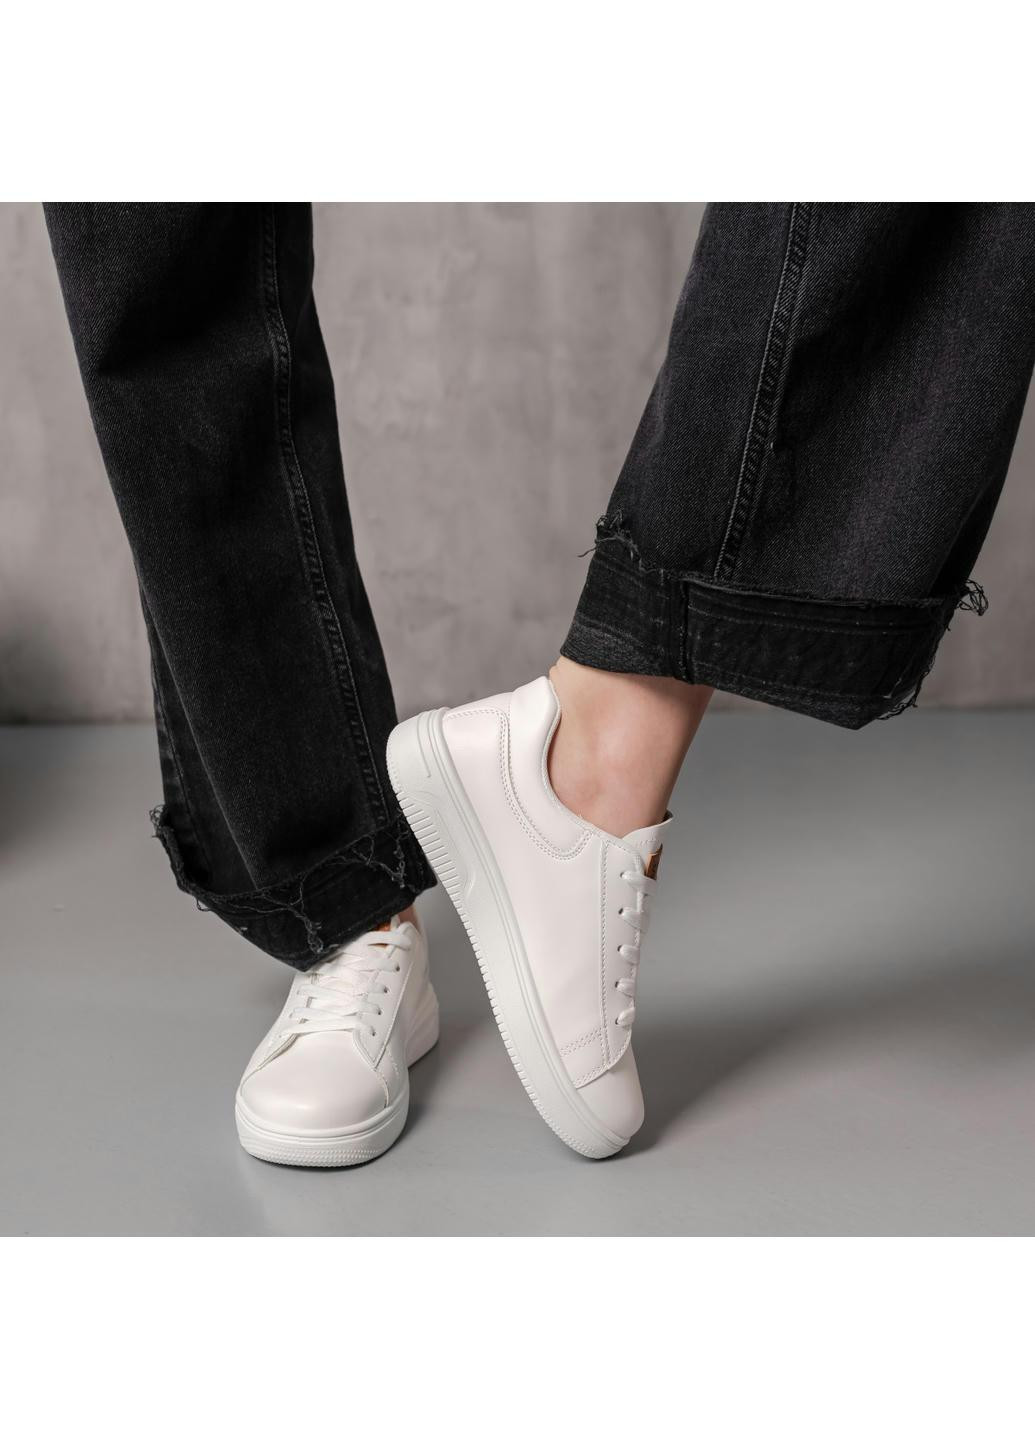 Белые демисезонные кроссовки женские sandra 3946 24 белый Fashion